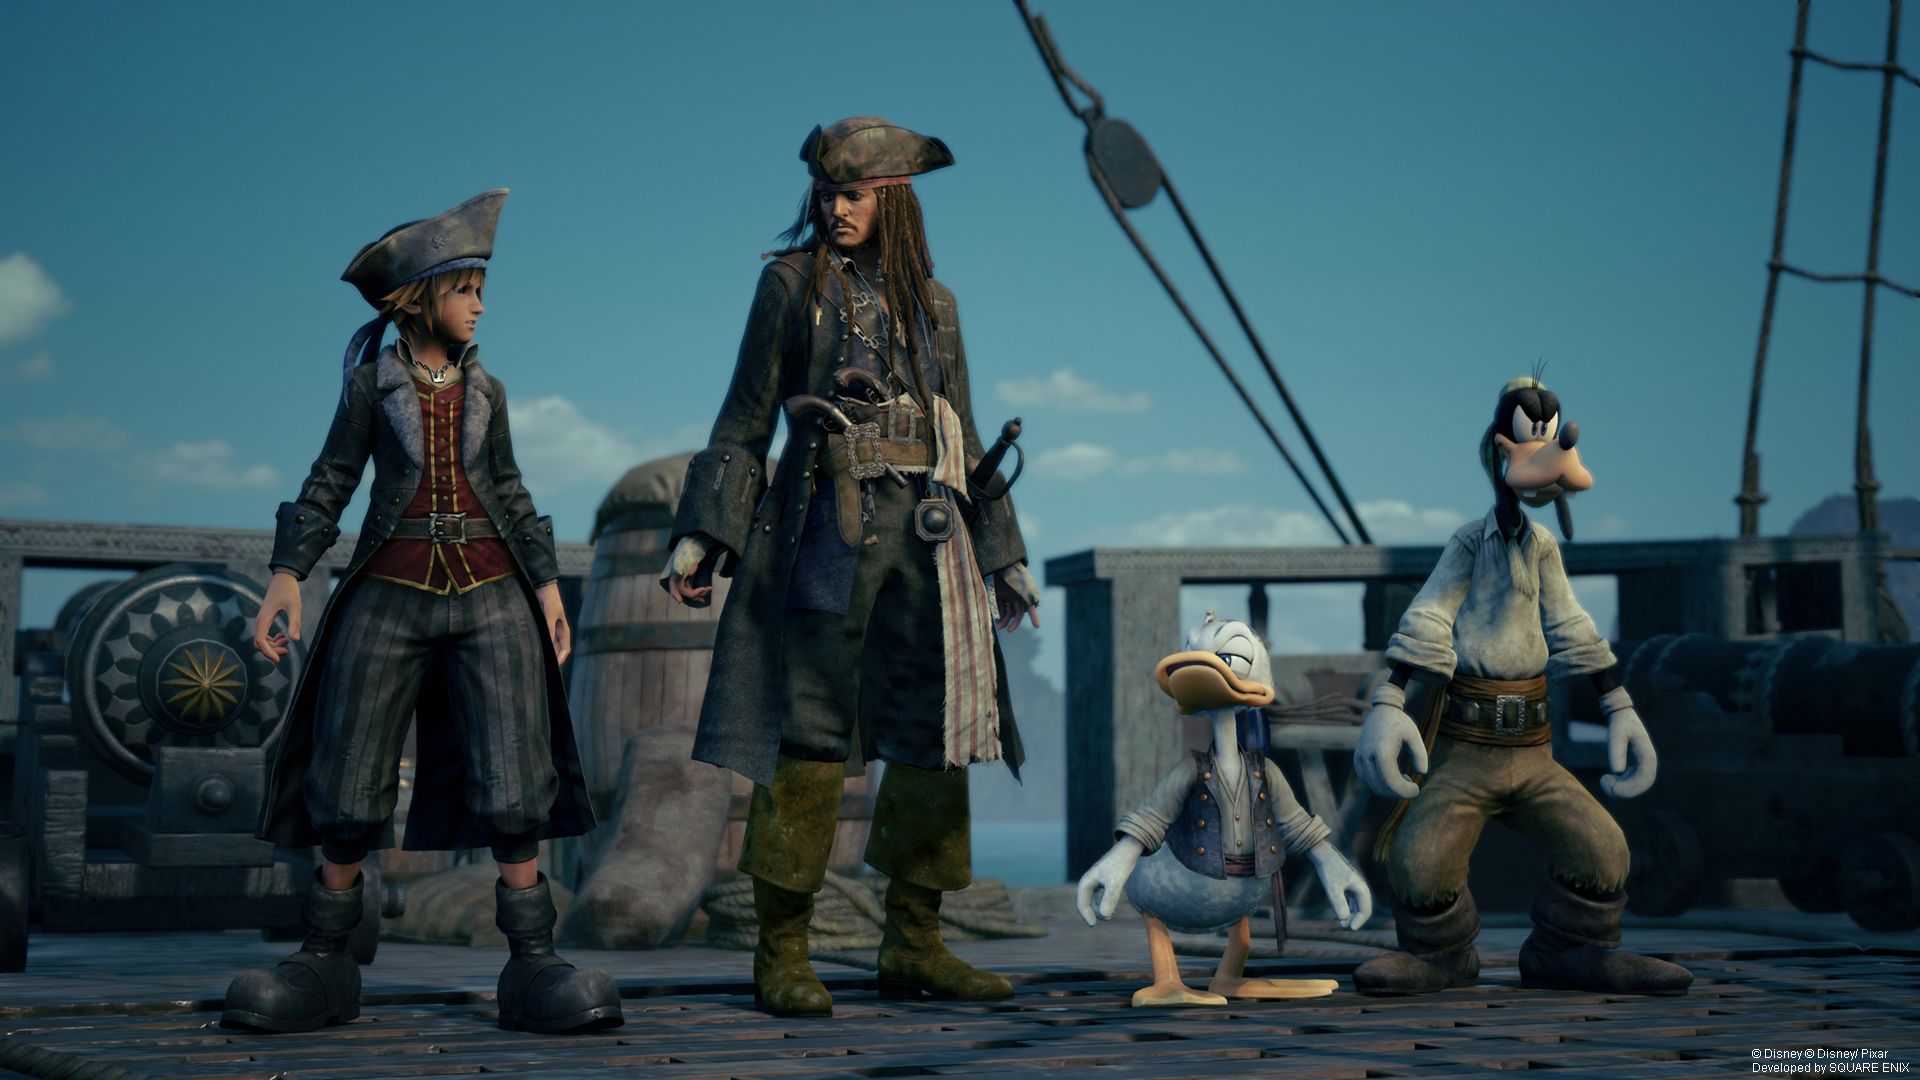 Capitão Jack Sparrow (Jared Butler) recebe os velhos amigos Sora (Hayley Joel Osment), Donald (Tony Anselmo) e Pateta (Bill Farmer) a bordo do Pérola Negra em Kingdom Hearts III (2019), Square Enix via Square Enix